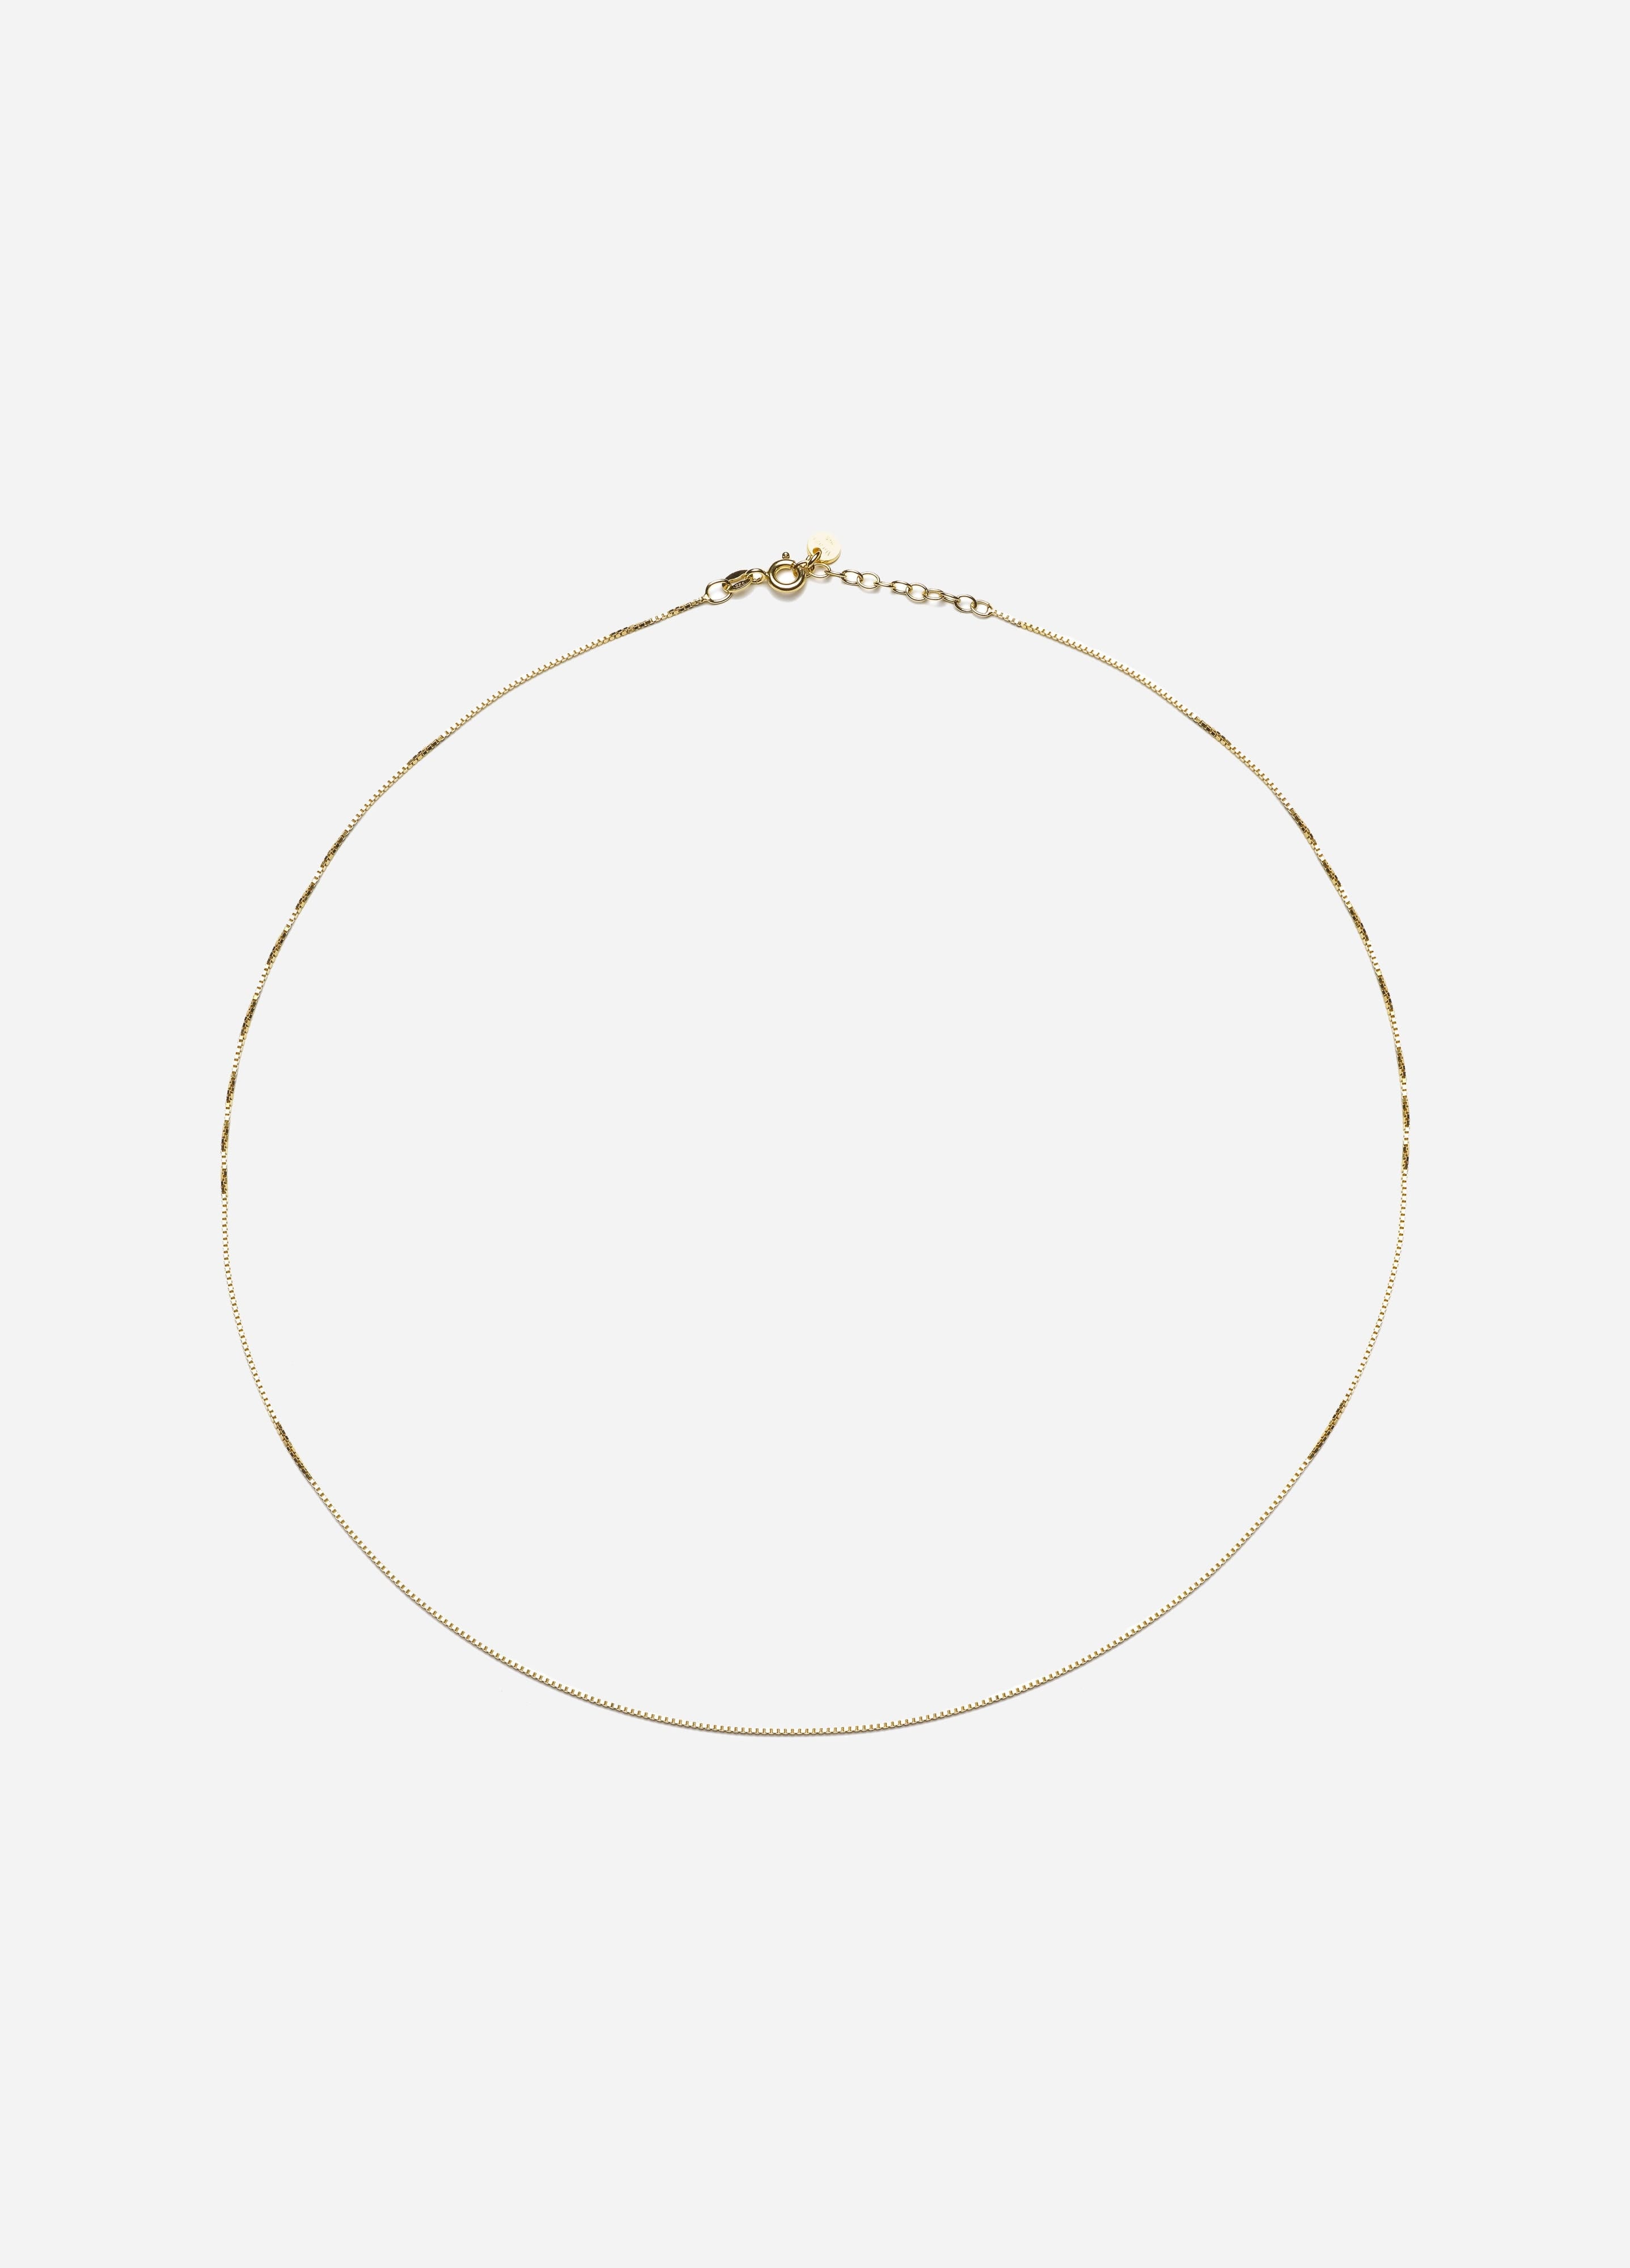 Box Chain Necklace, Subtle, Women, Gold